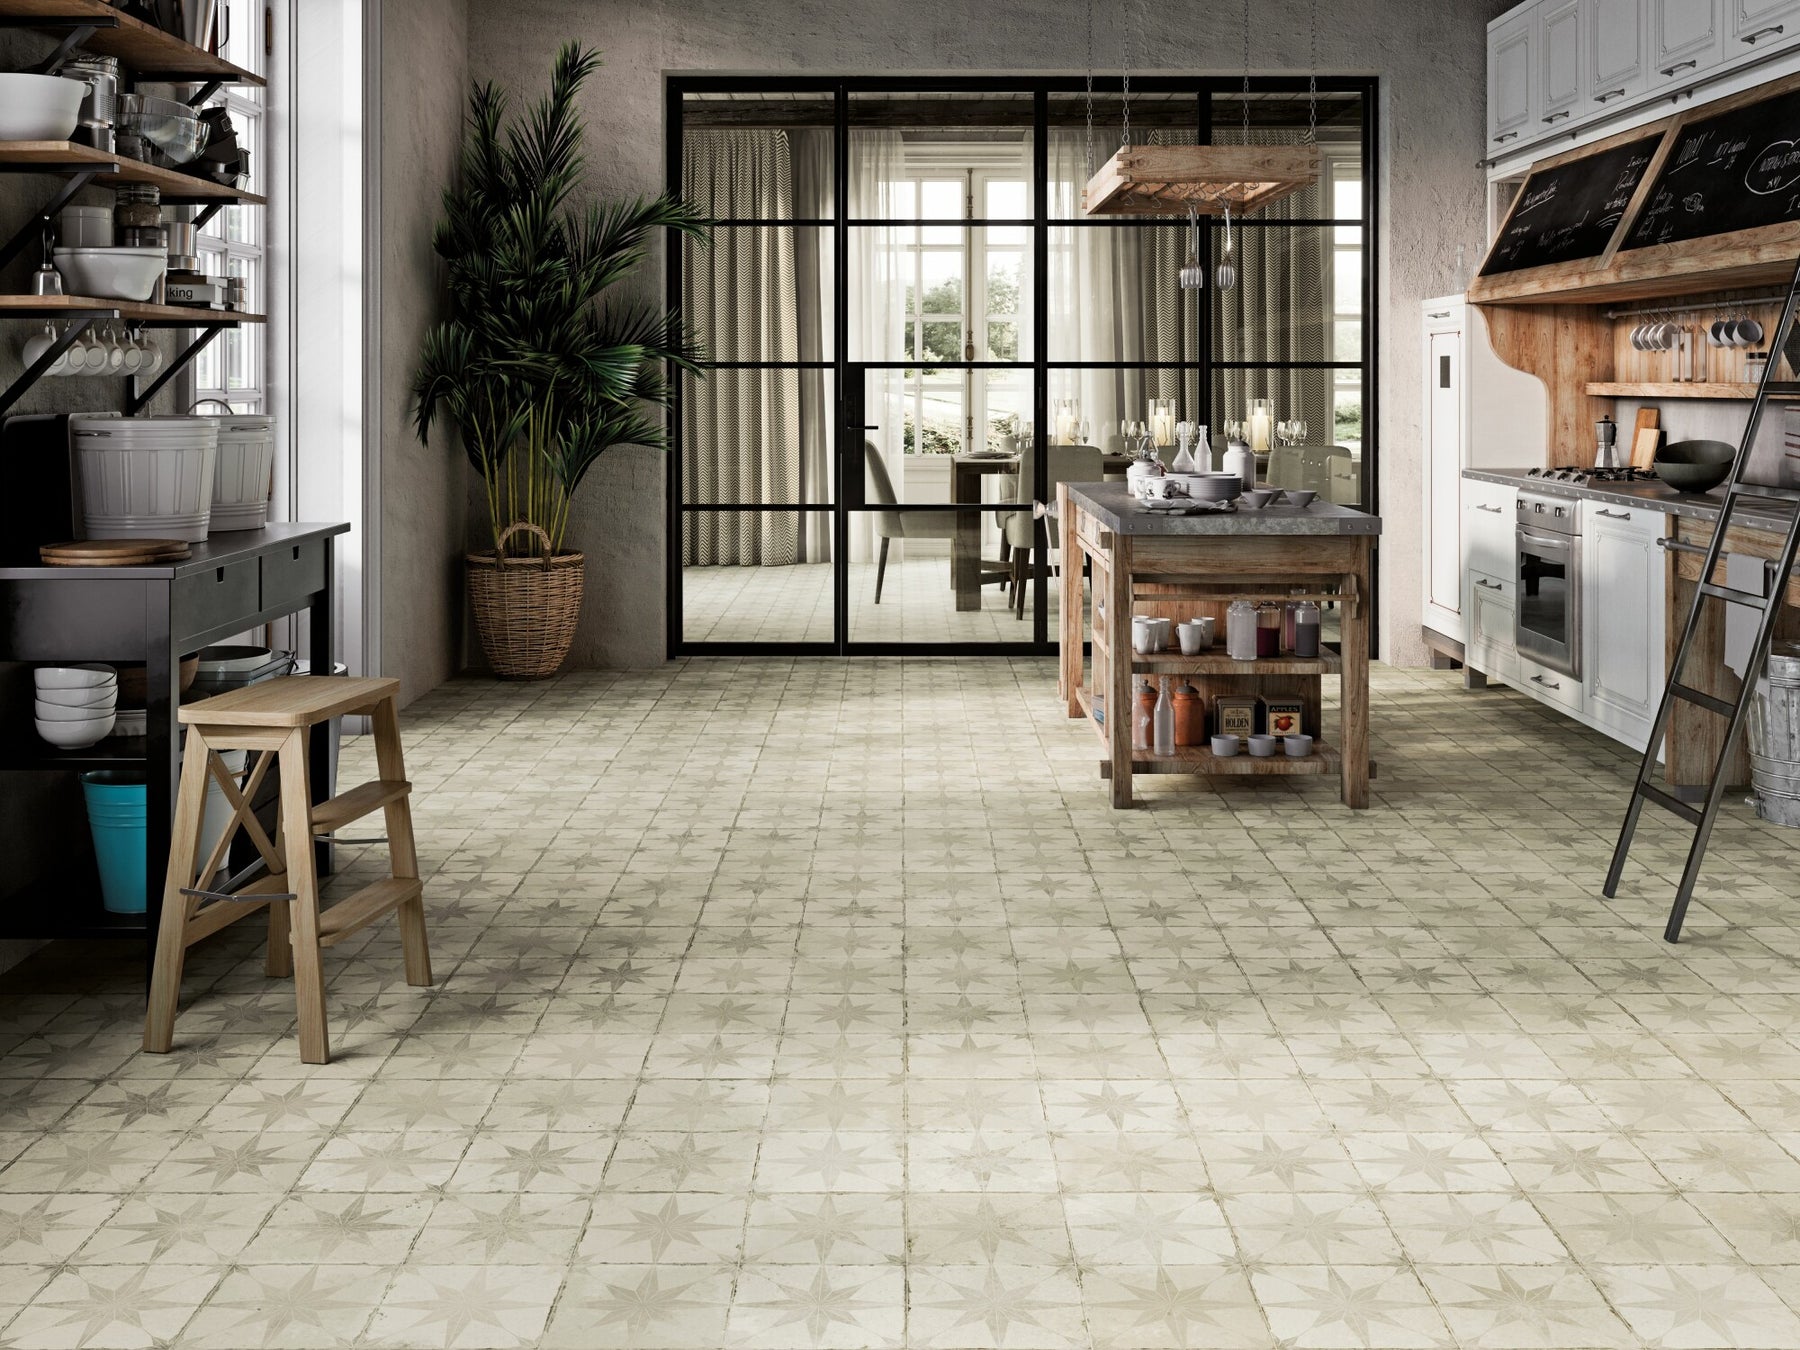 Star White Pattern Floor Tile 45x45cm as a kitchen floor tile